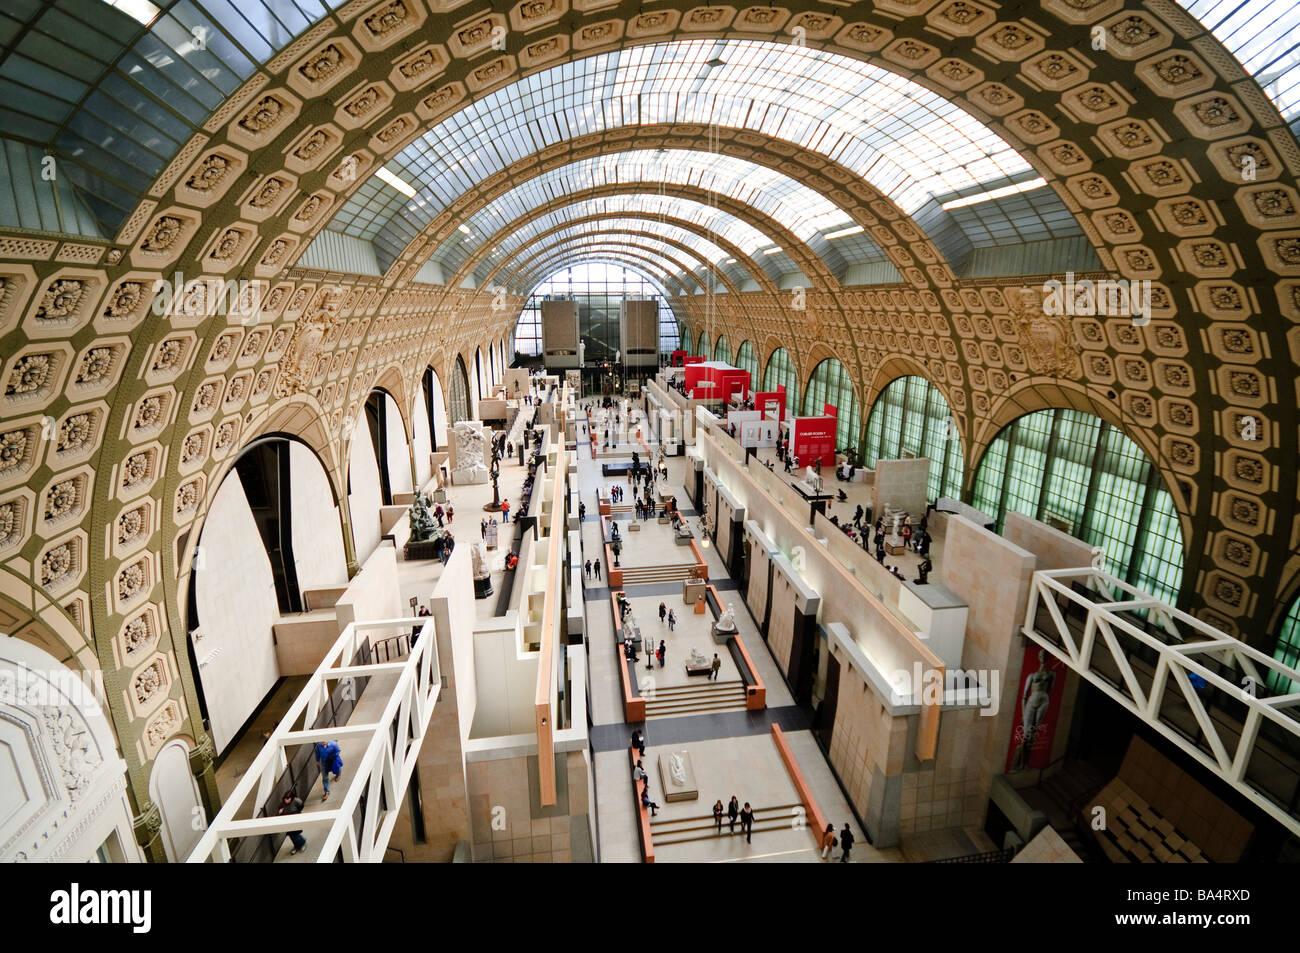 PARIS, Frankreich - Main Hall des Musée d'Orsay, früher ein Bahnhof (Gare d'Orsay) und jetzt eine Kunstgalerie der französischen Kunst von 1848 bis 1915 Zeitraum gewidmet. Verfügt über Erweiterung Sammlung von Meisterwerken von Malern wie Renoir, Cézanne, Monet und Degas. Stockfoto